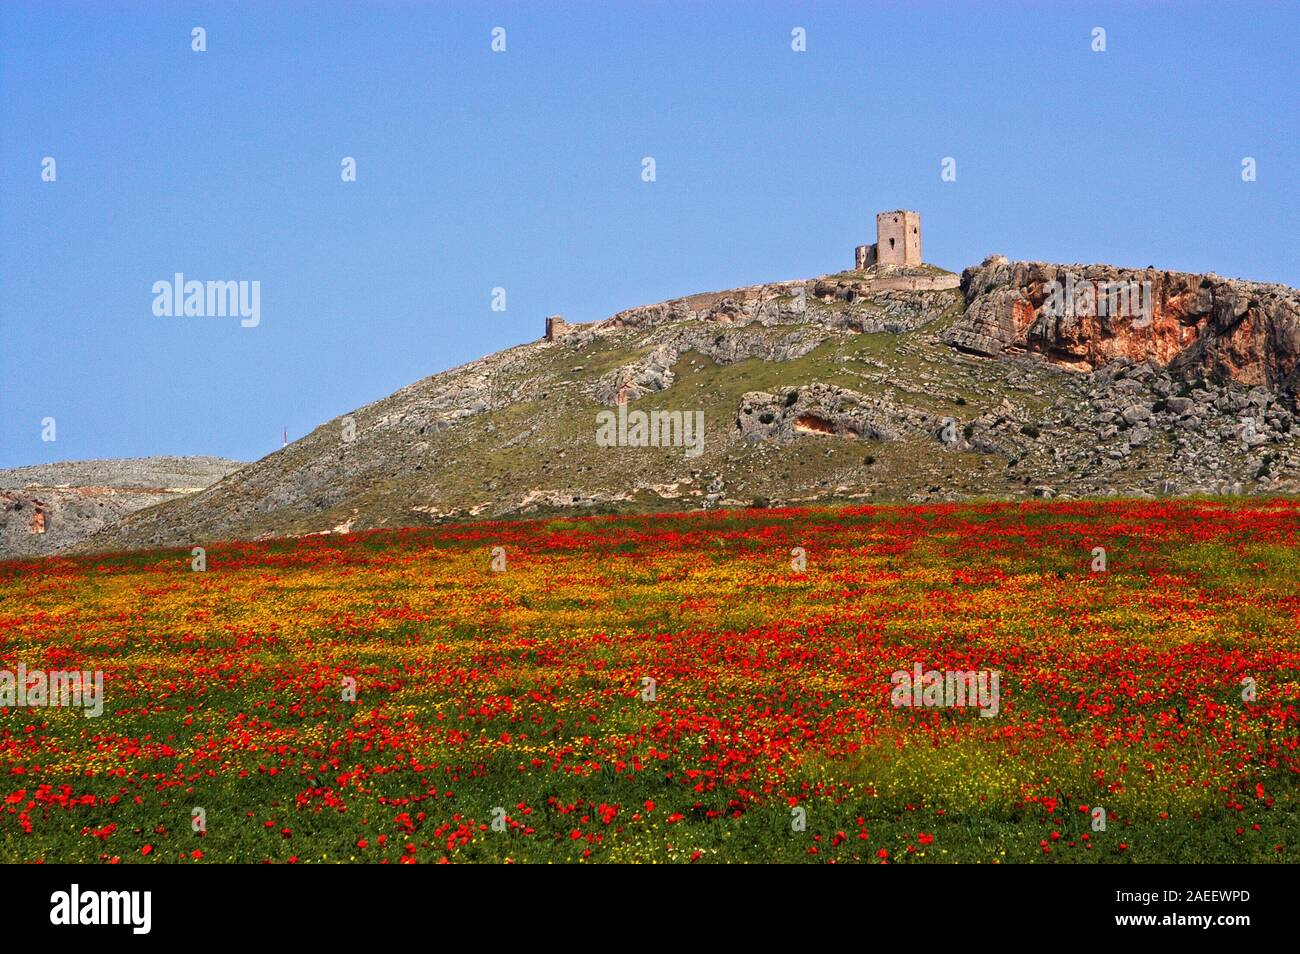 Vista del castello di stella sulla cima della collina con un campo di papavero in primo piano, Teba, provincia di Malaga, Andalusia, Spagna, Europa occidentale. Foto Stock